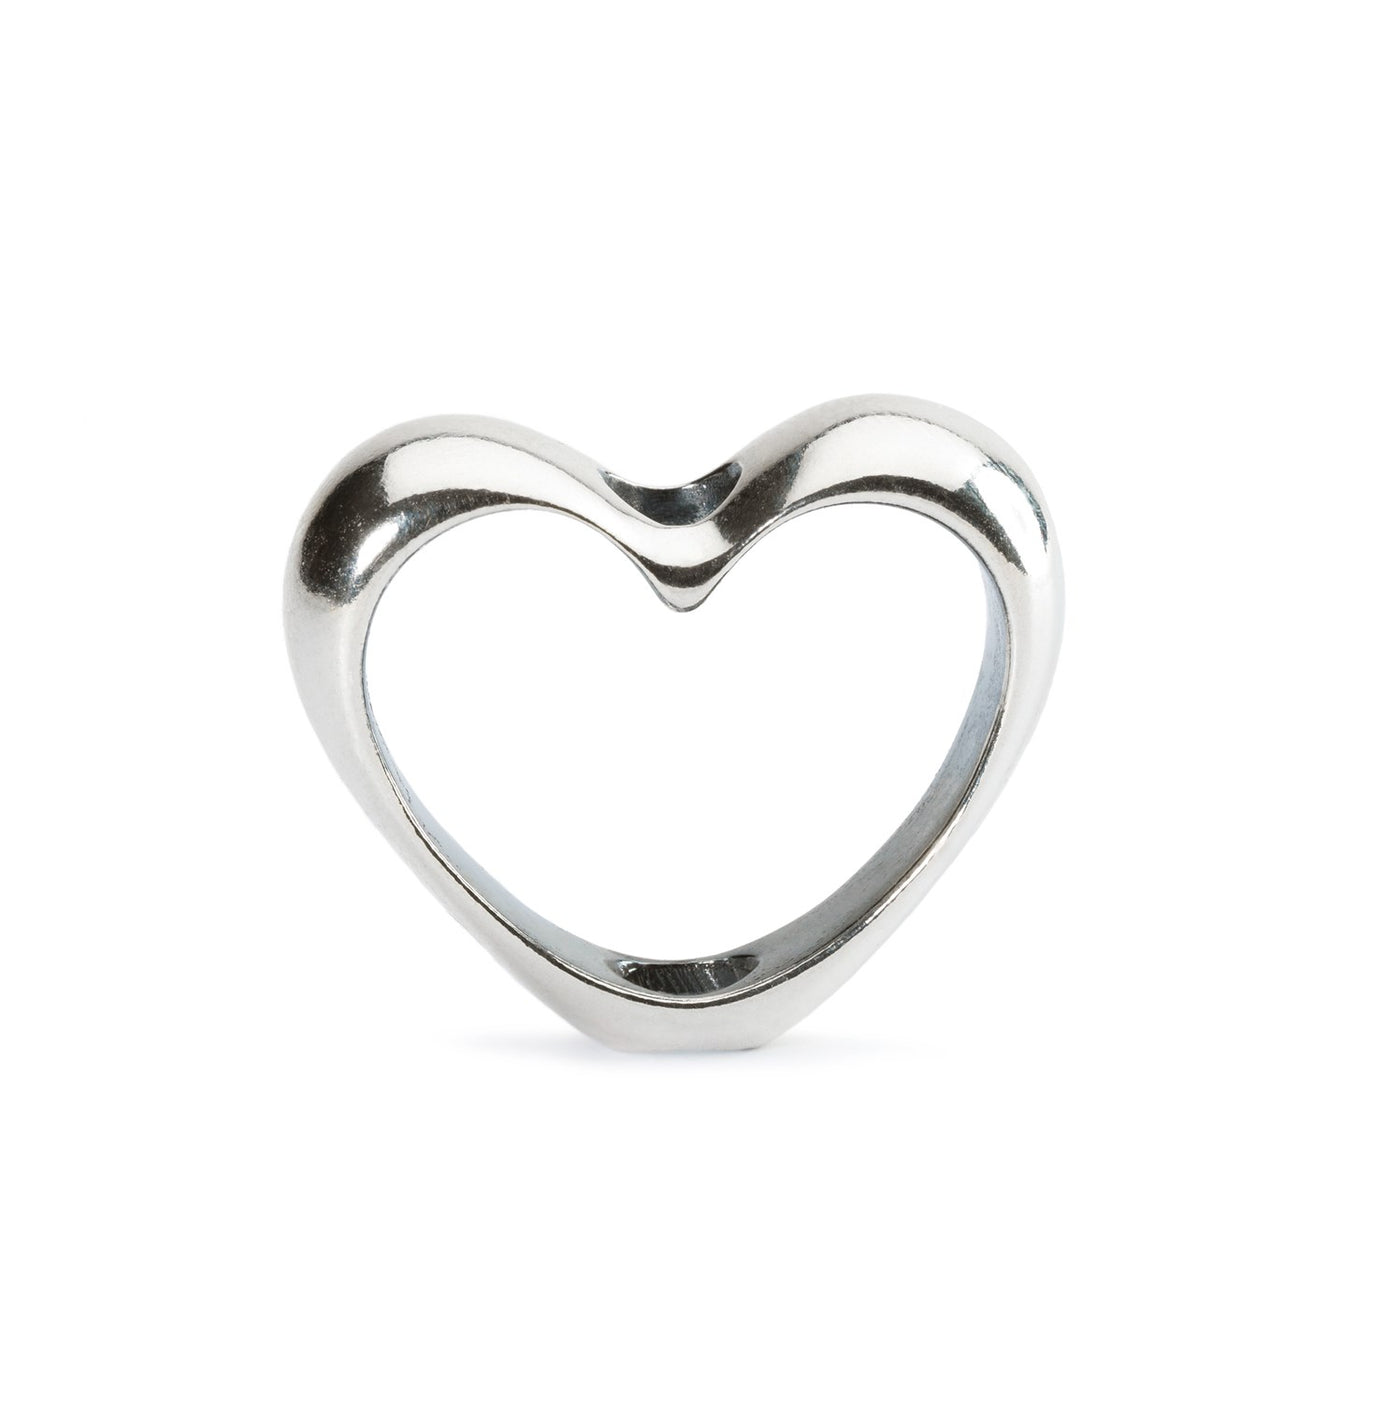 I dit Hjerte vedhæng - Et smukt smykke med hjerte-design, lavet i sølv. Perfekt til at tilføje et strejf af elegance til enhvert outfit.